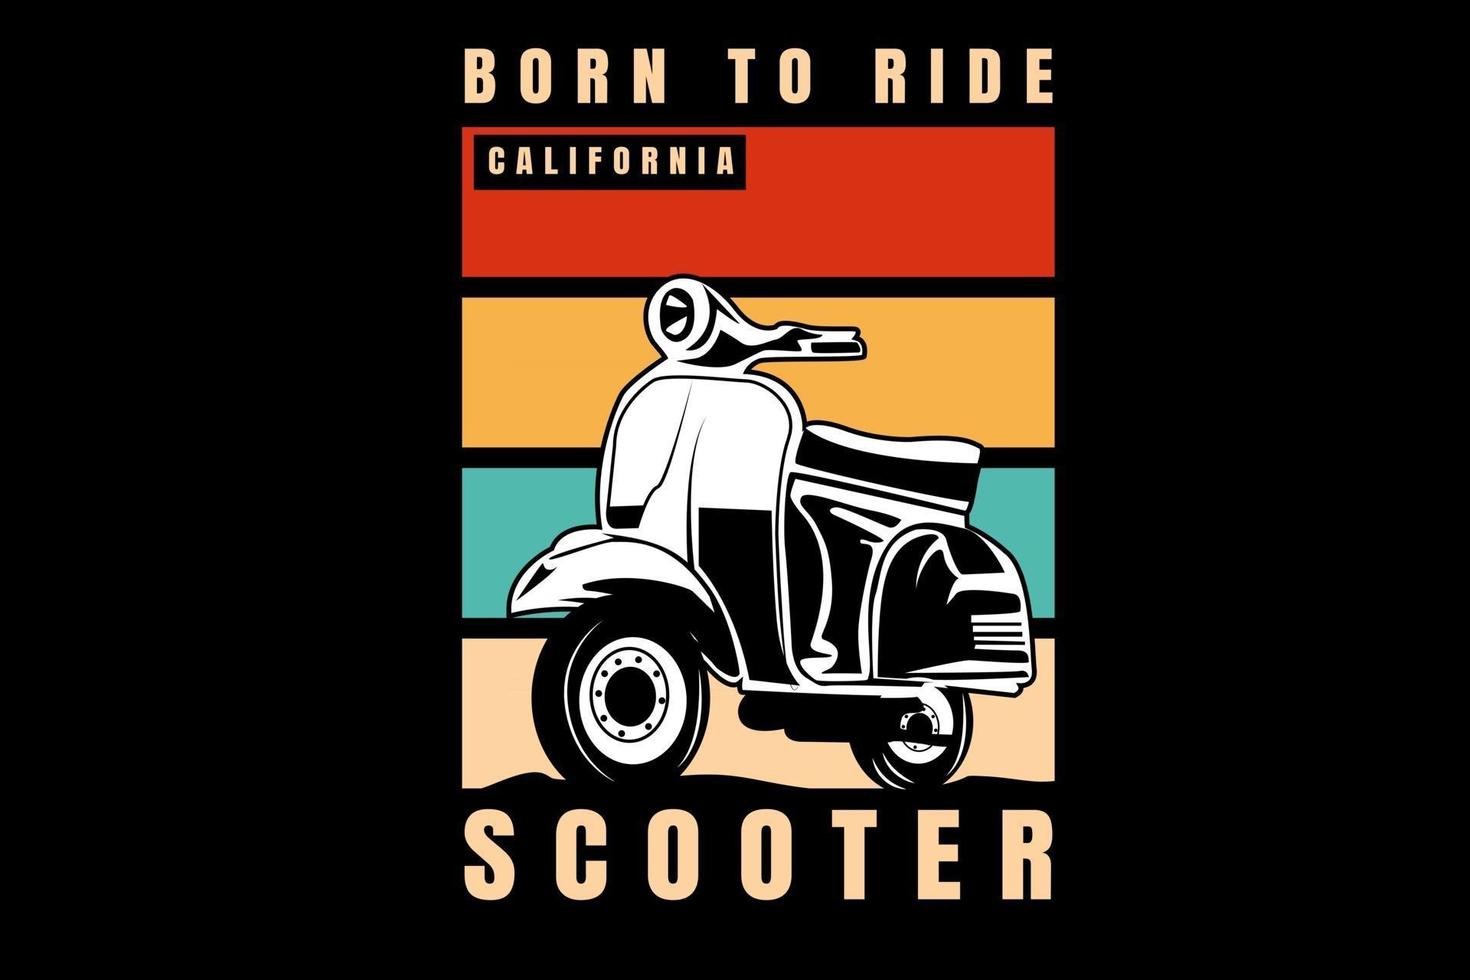 born to ride california scooter färg orange grädde och grön vektor